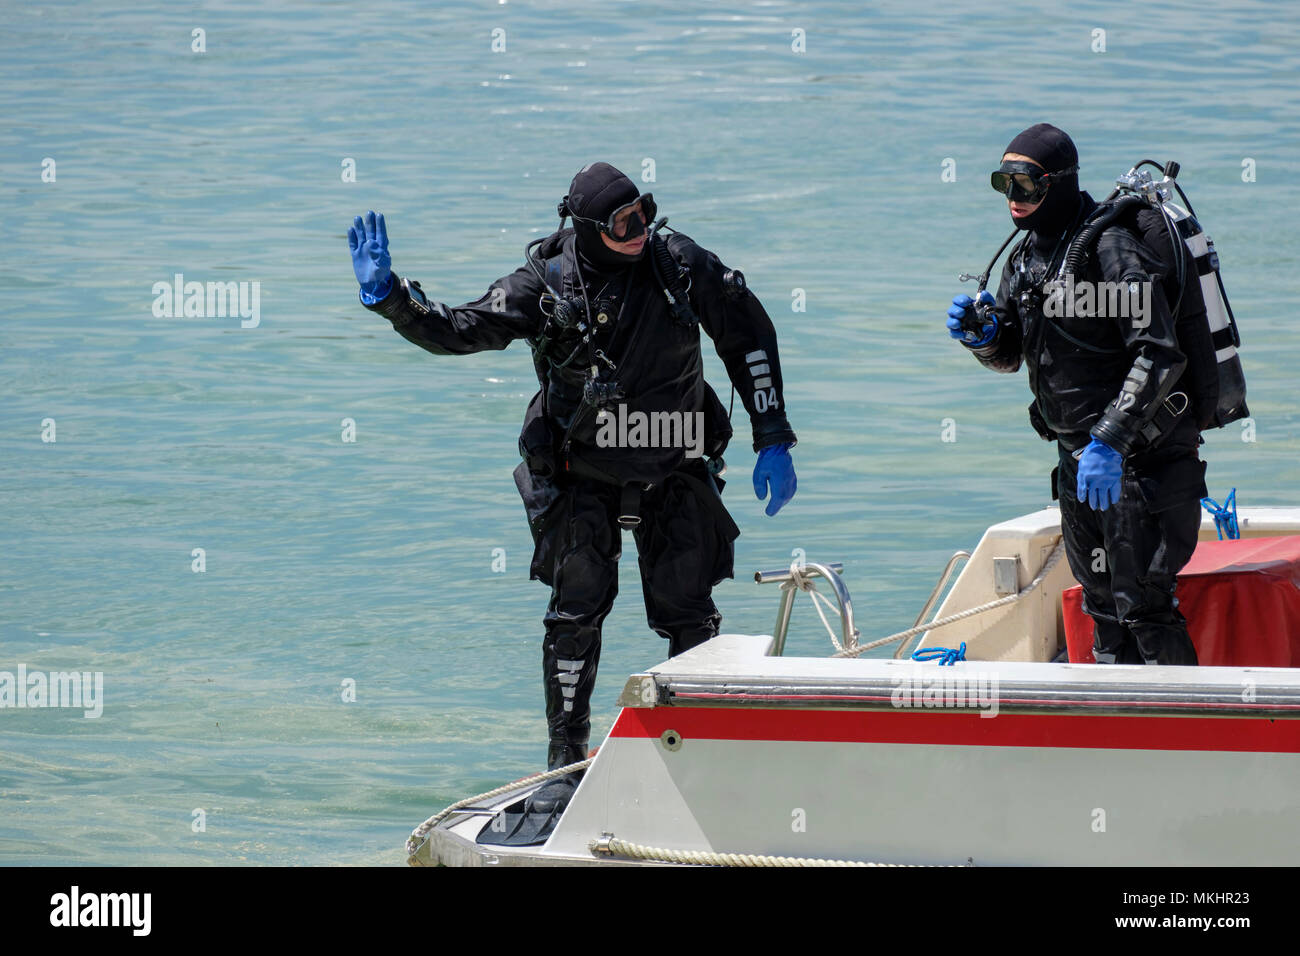 Deux plongeurs dans l'équipement de plongée complet sur un bateau Banque D'Images